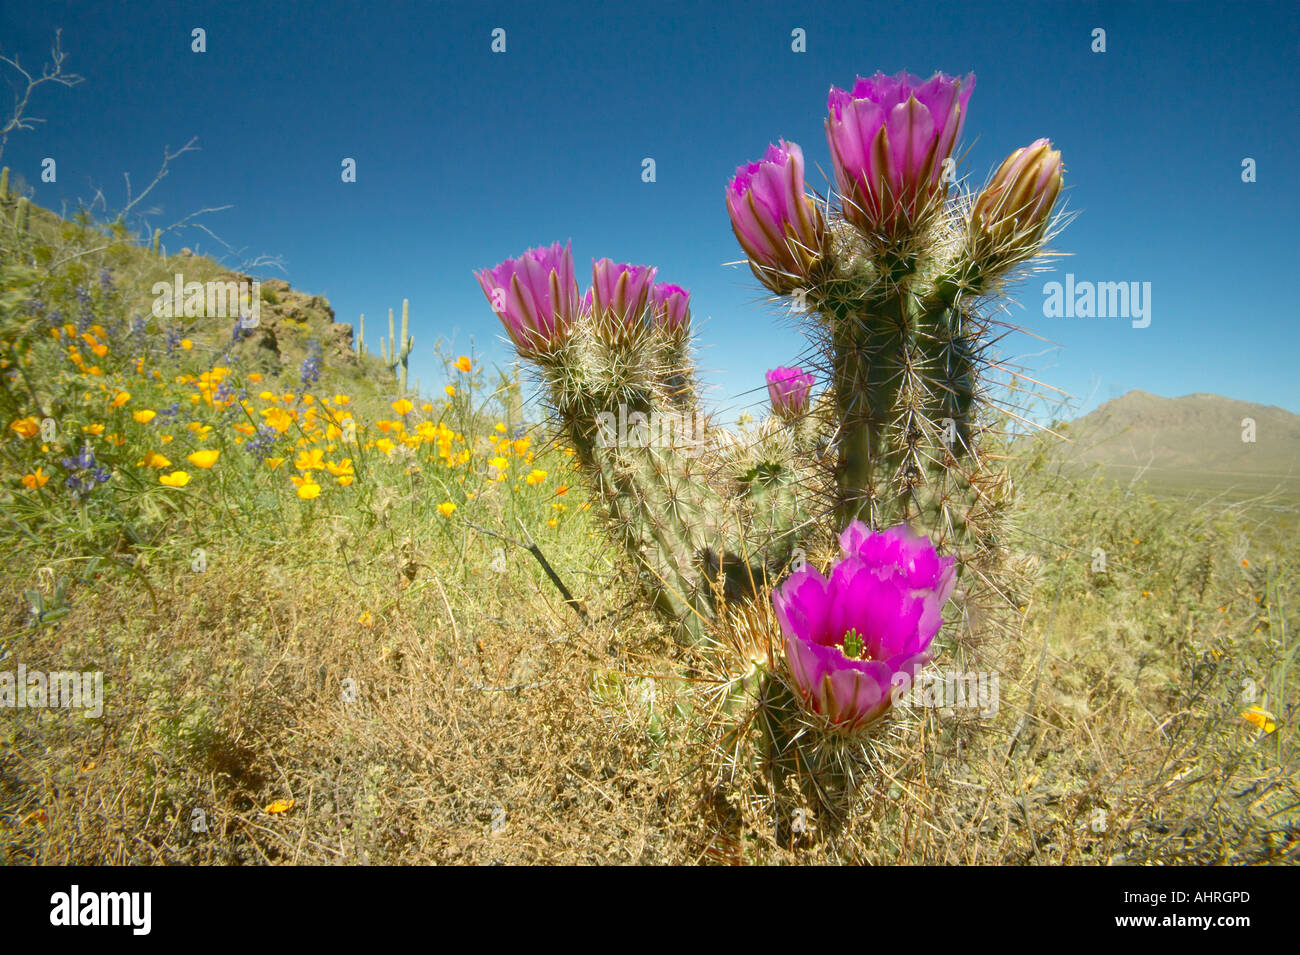 Igel-Kaktus in Blüte und Mohn Blume im Picacho Peak State Park nördlich von Tucson AZ Stockfoto